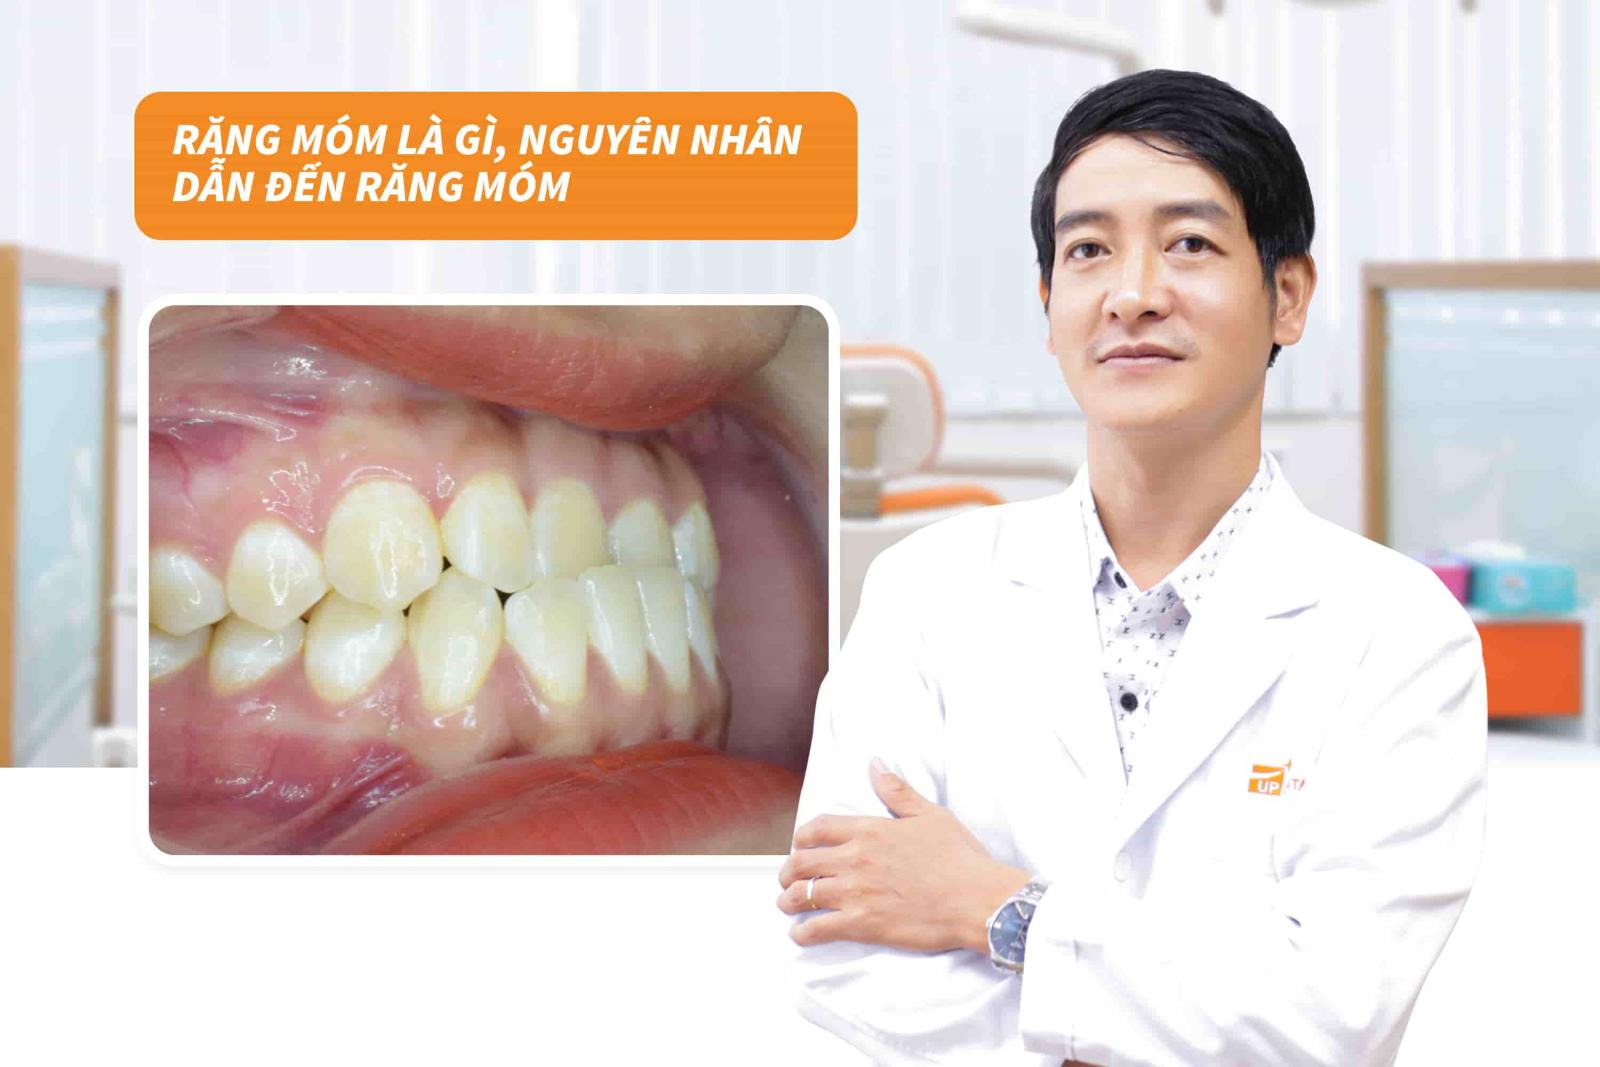 Nguyên nhân dẫn đến răng móm